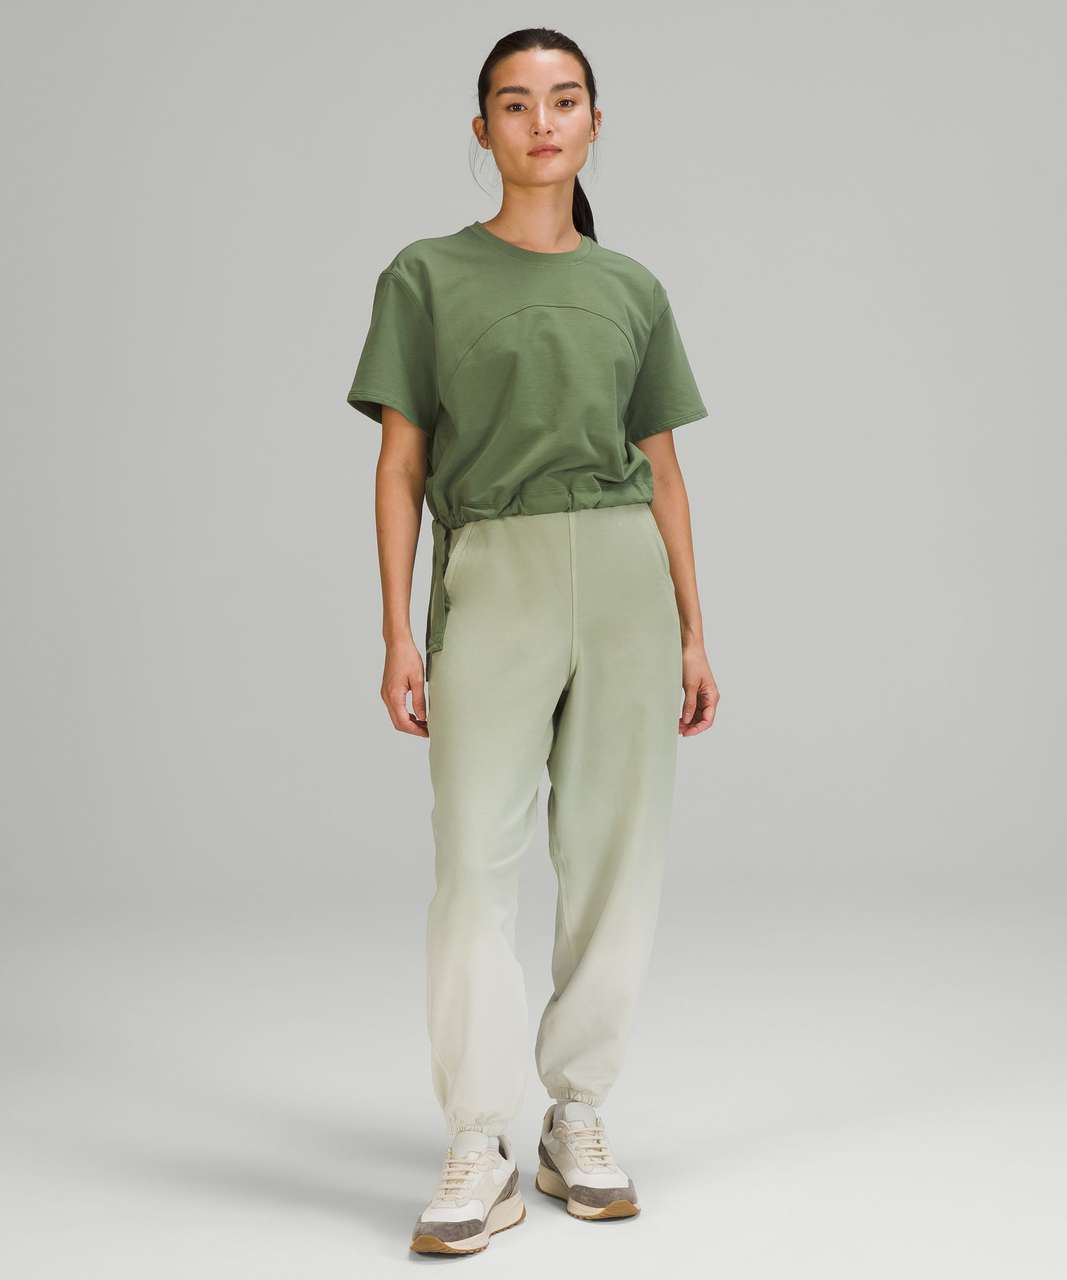 Lululemon LA Side Cinch T-Shirt - Green Twill